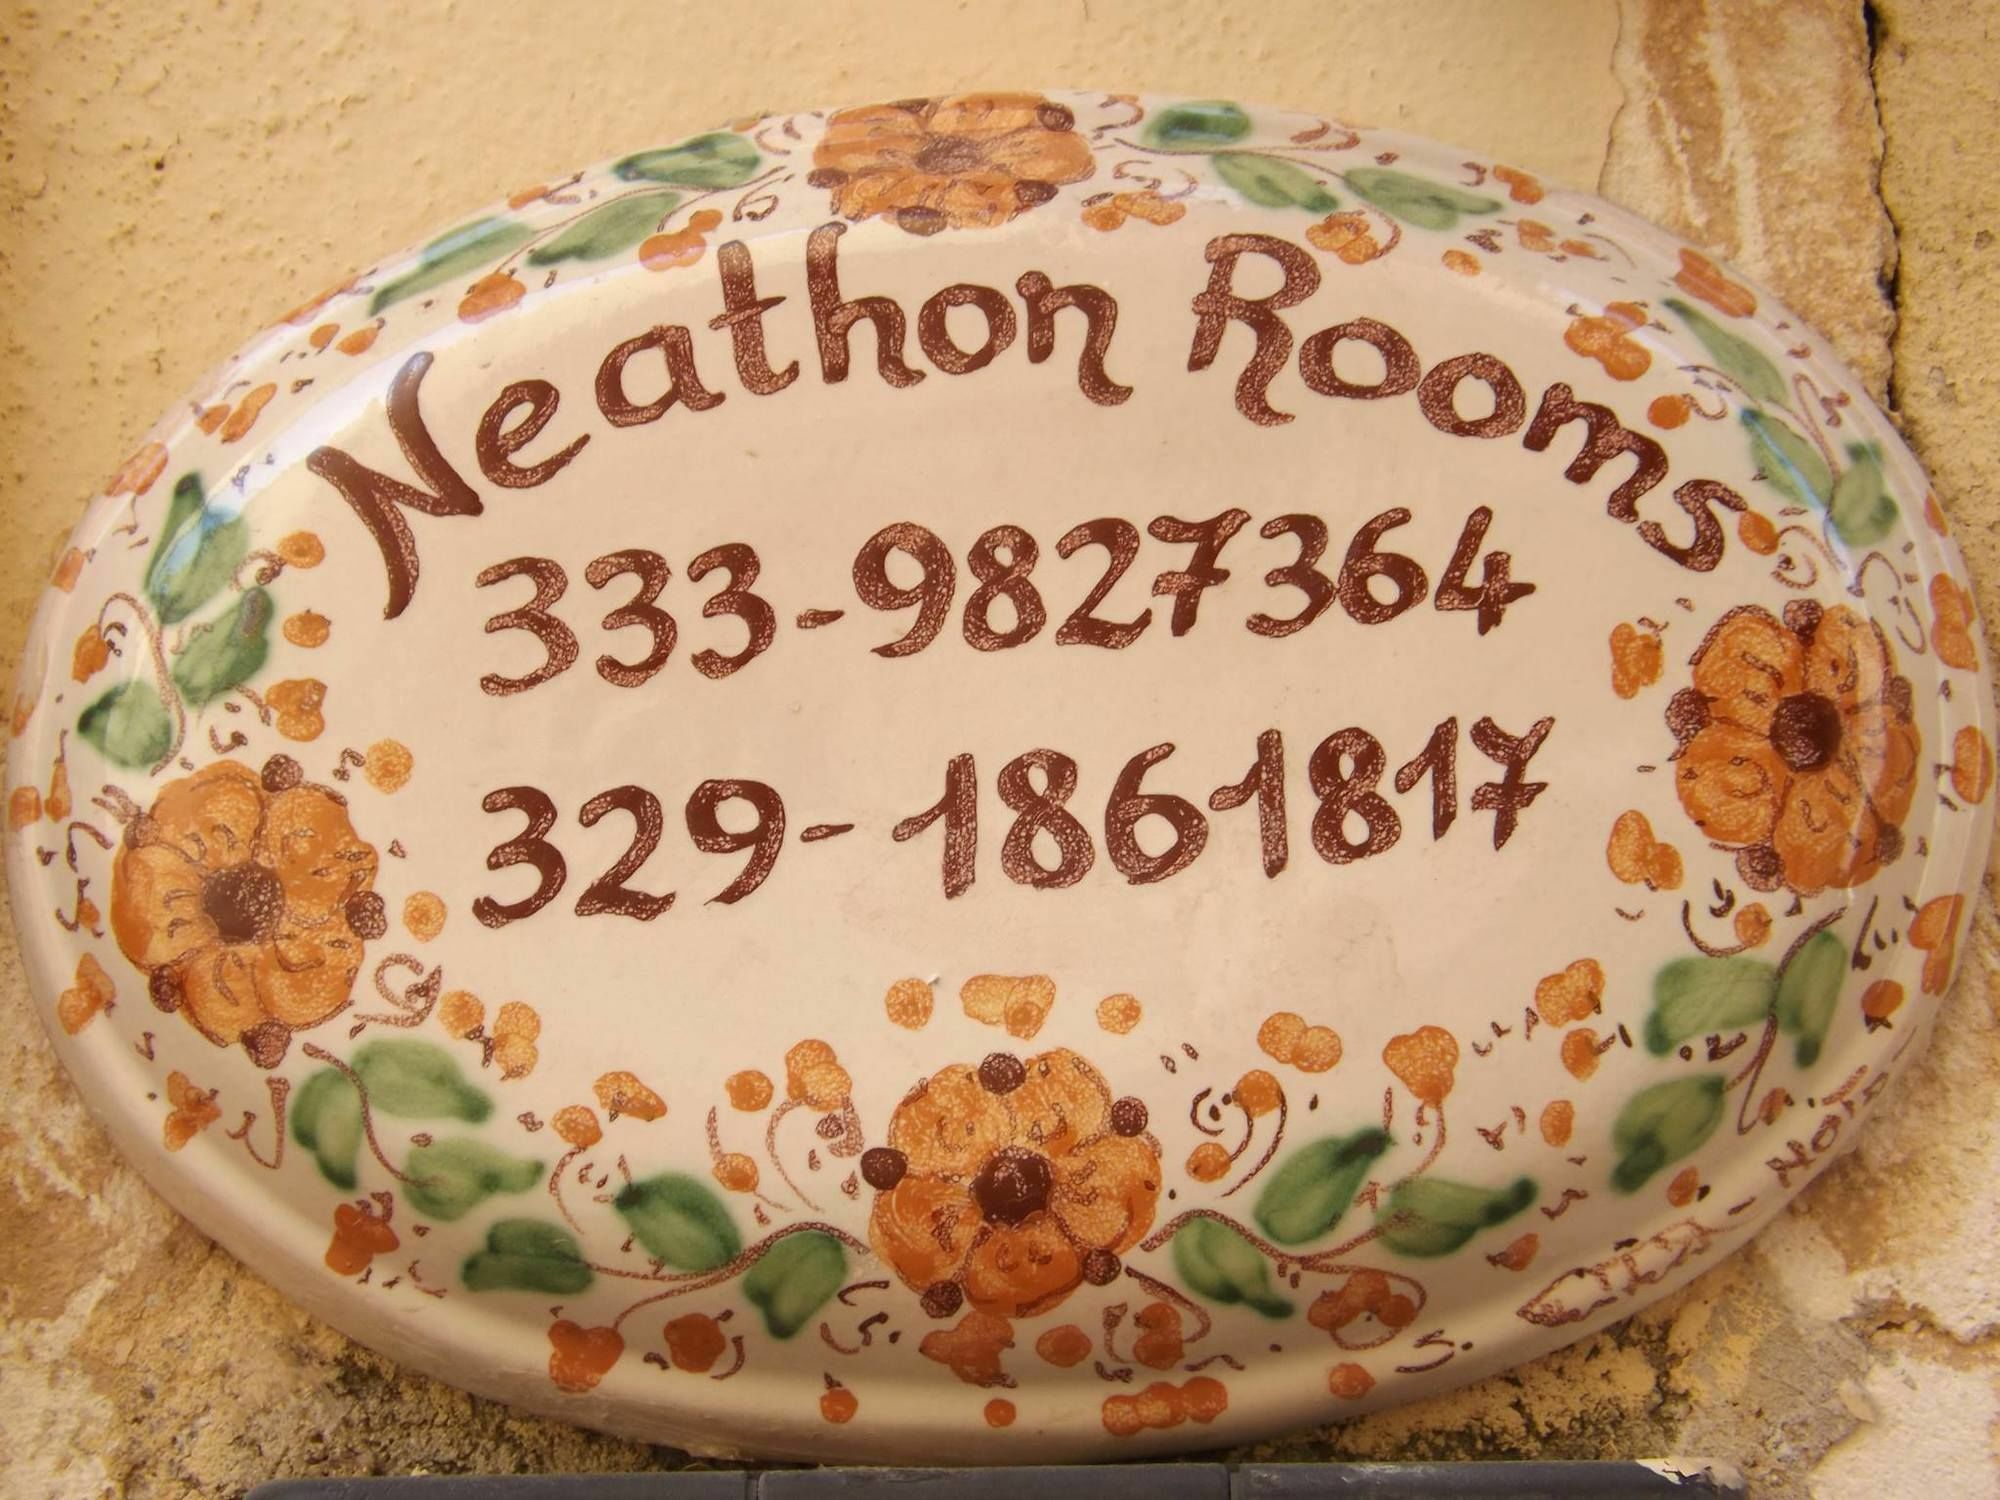 Neathon Rooms ノート エクステリア 写真